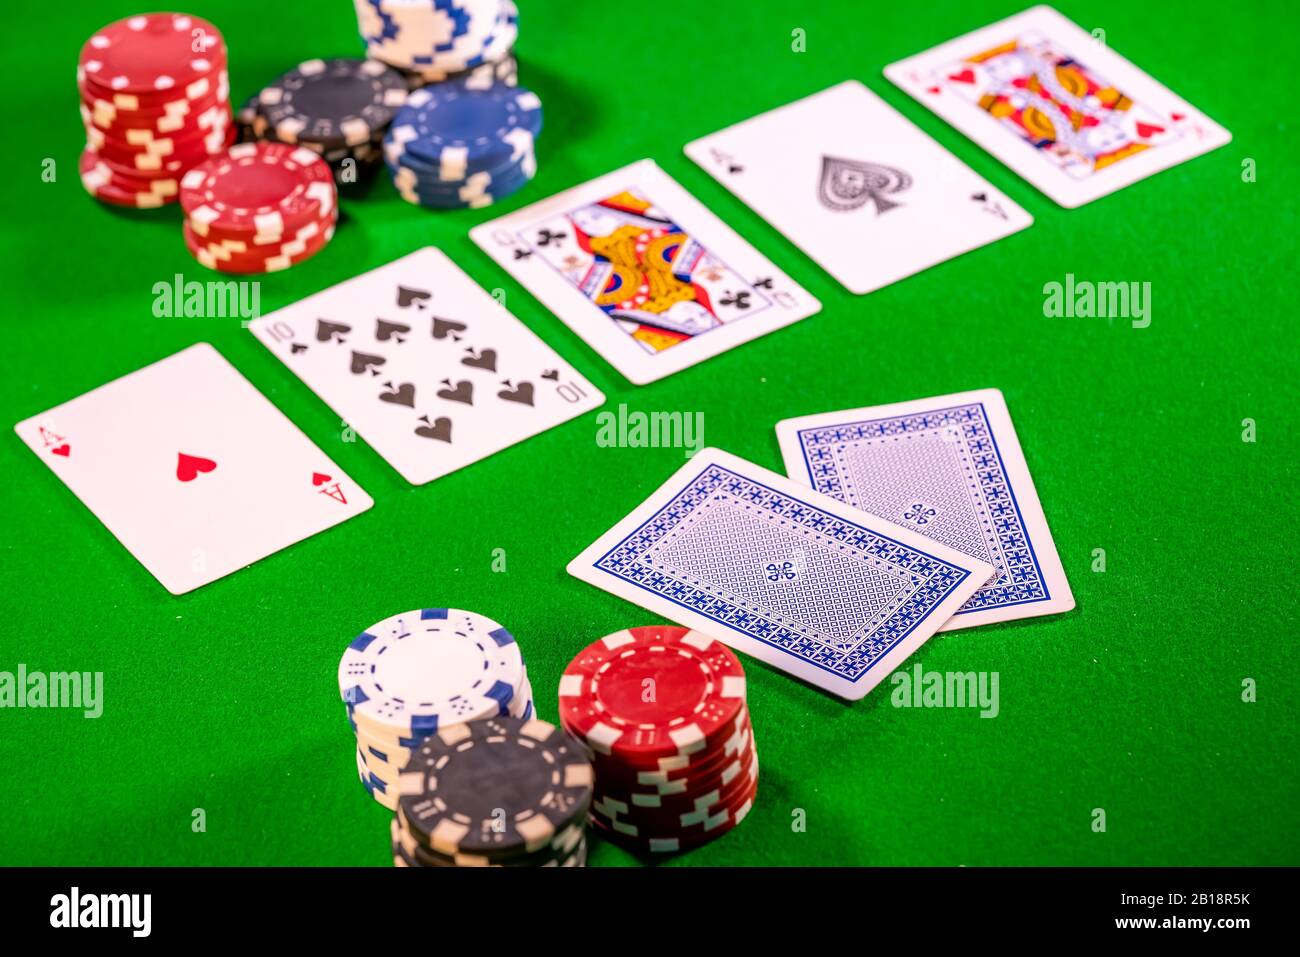 The River (fünfte Straße) in einem Spiel von Texas Holdem Poker mit  selektivem Fokus auf die Face Down Karten Stockfotografie - Alamy